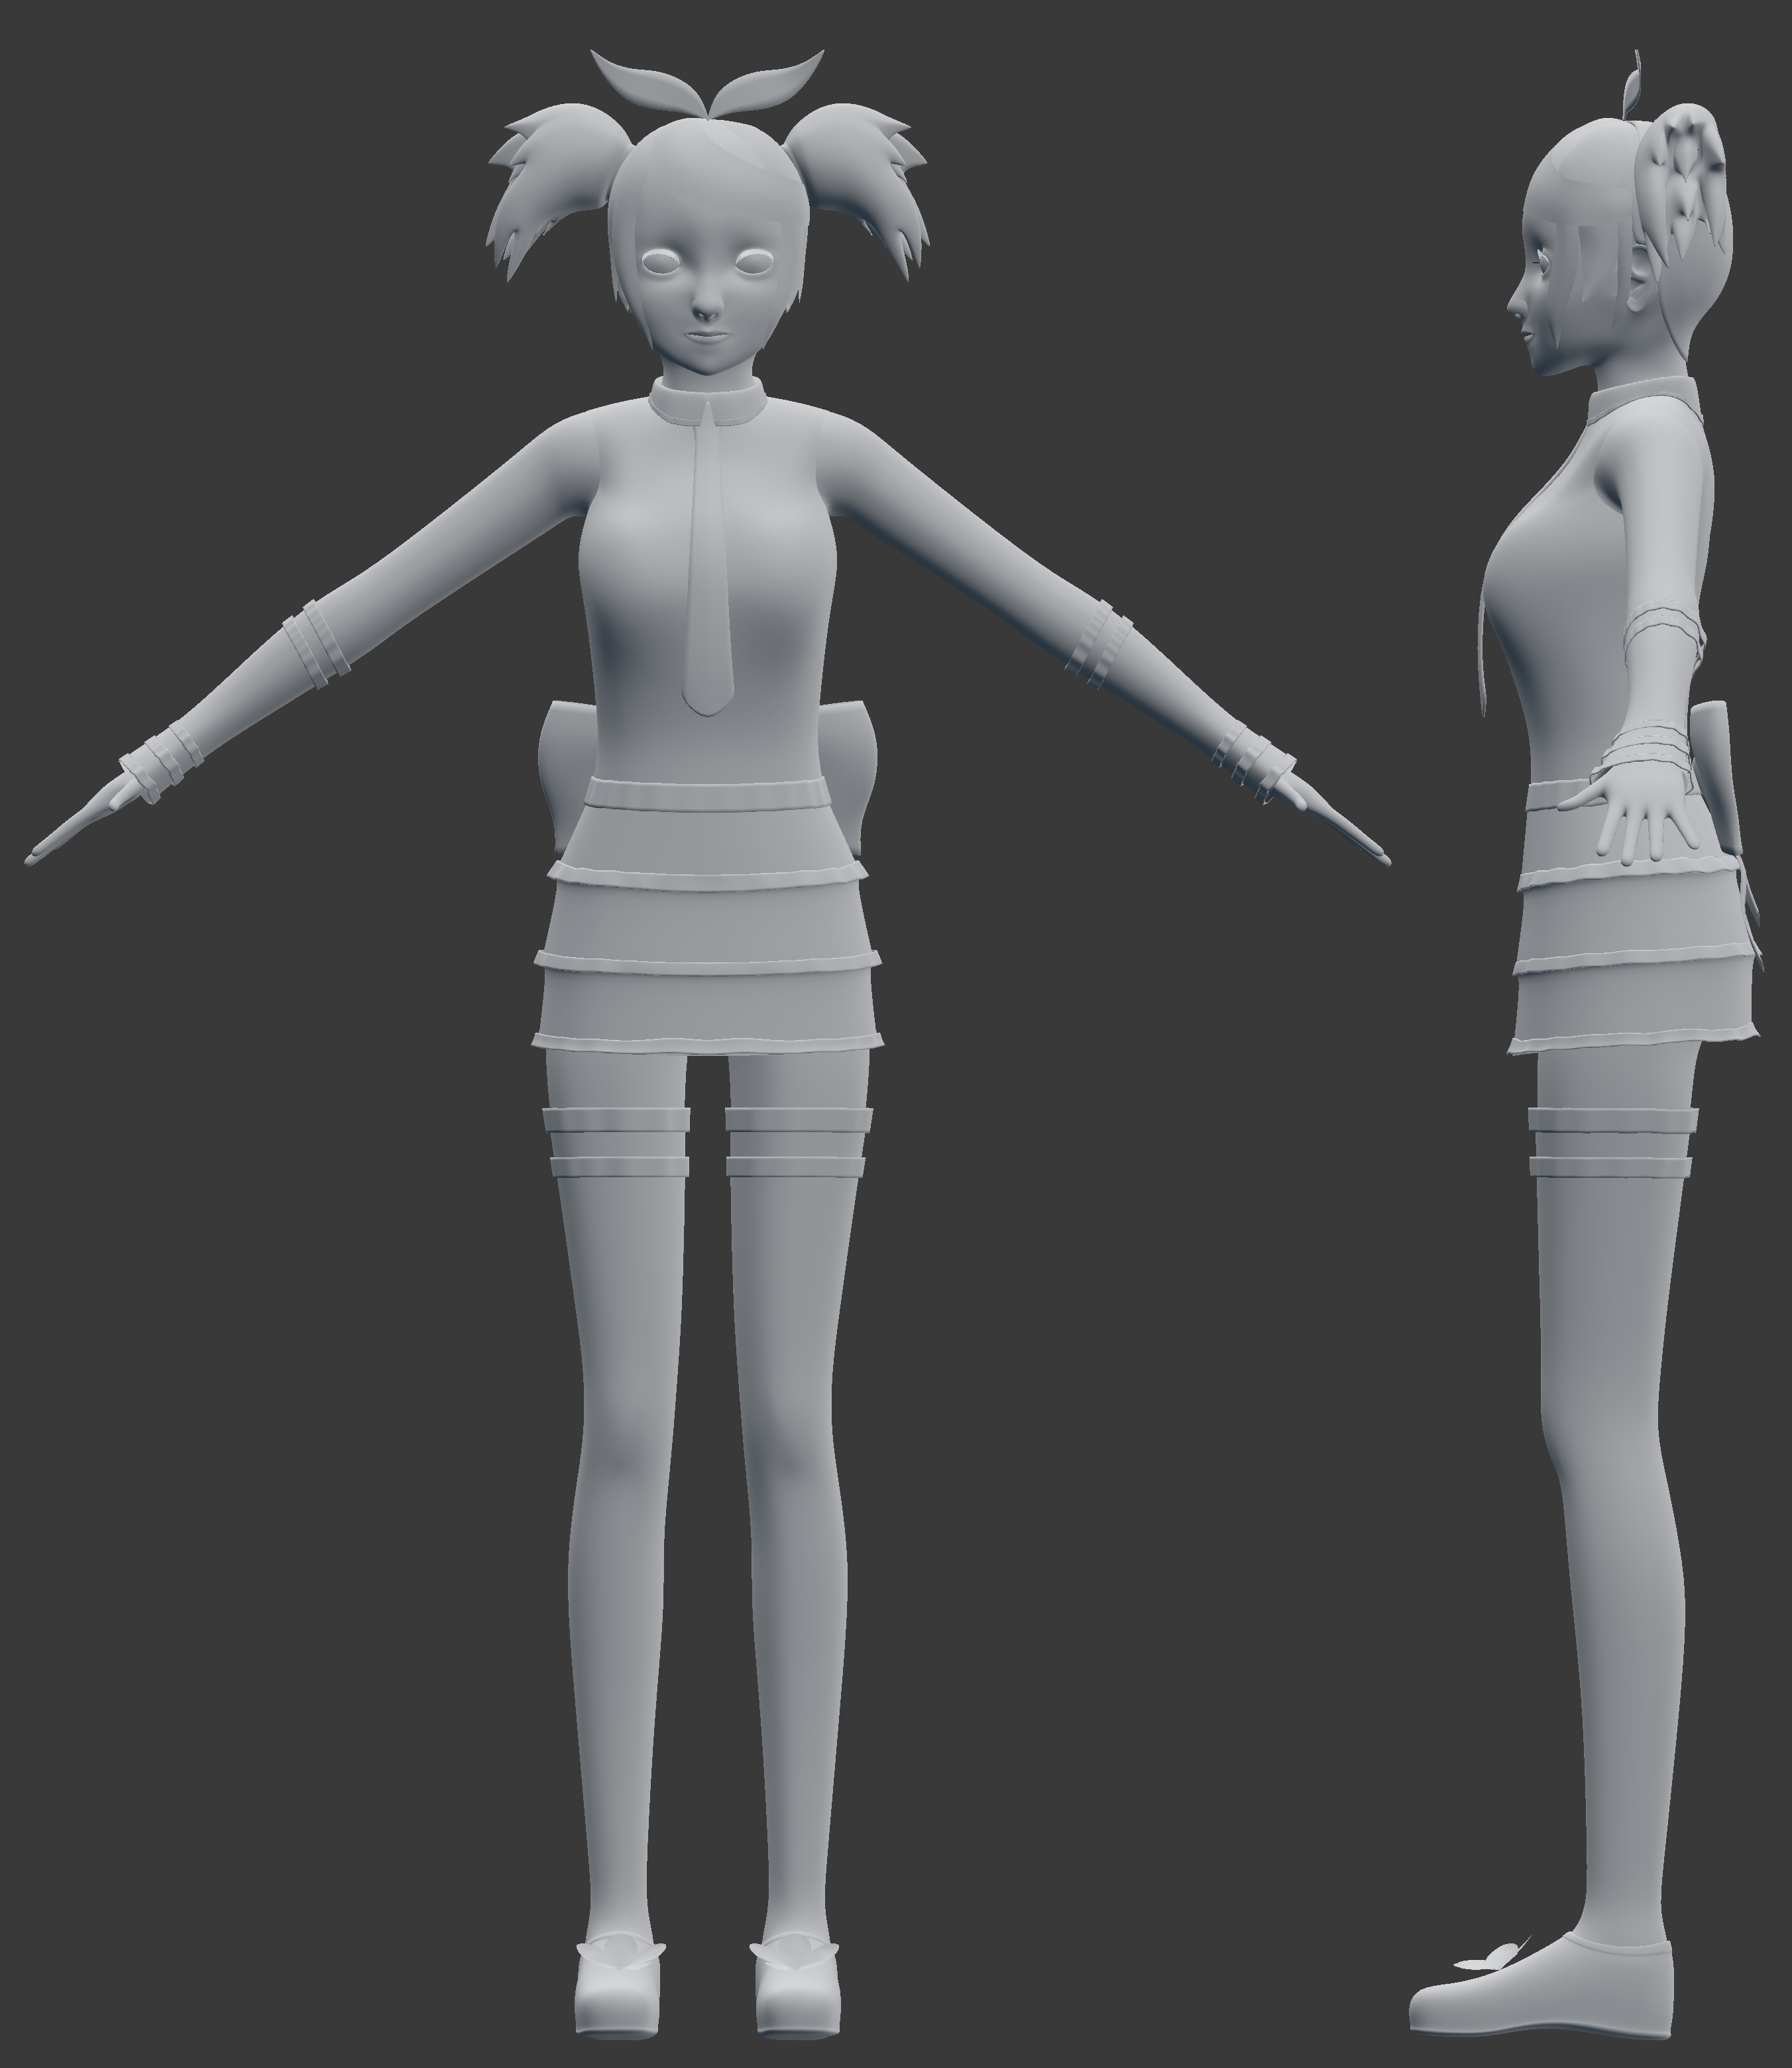 Chibi BaseMesh | 3D model | Chibi, Anime chibi, 3d model character